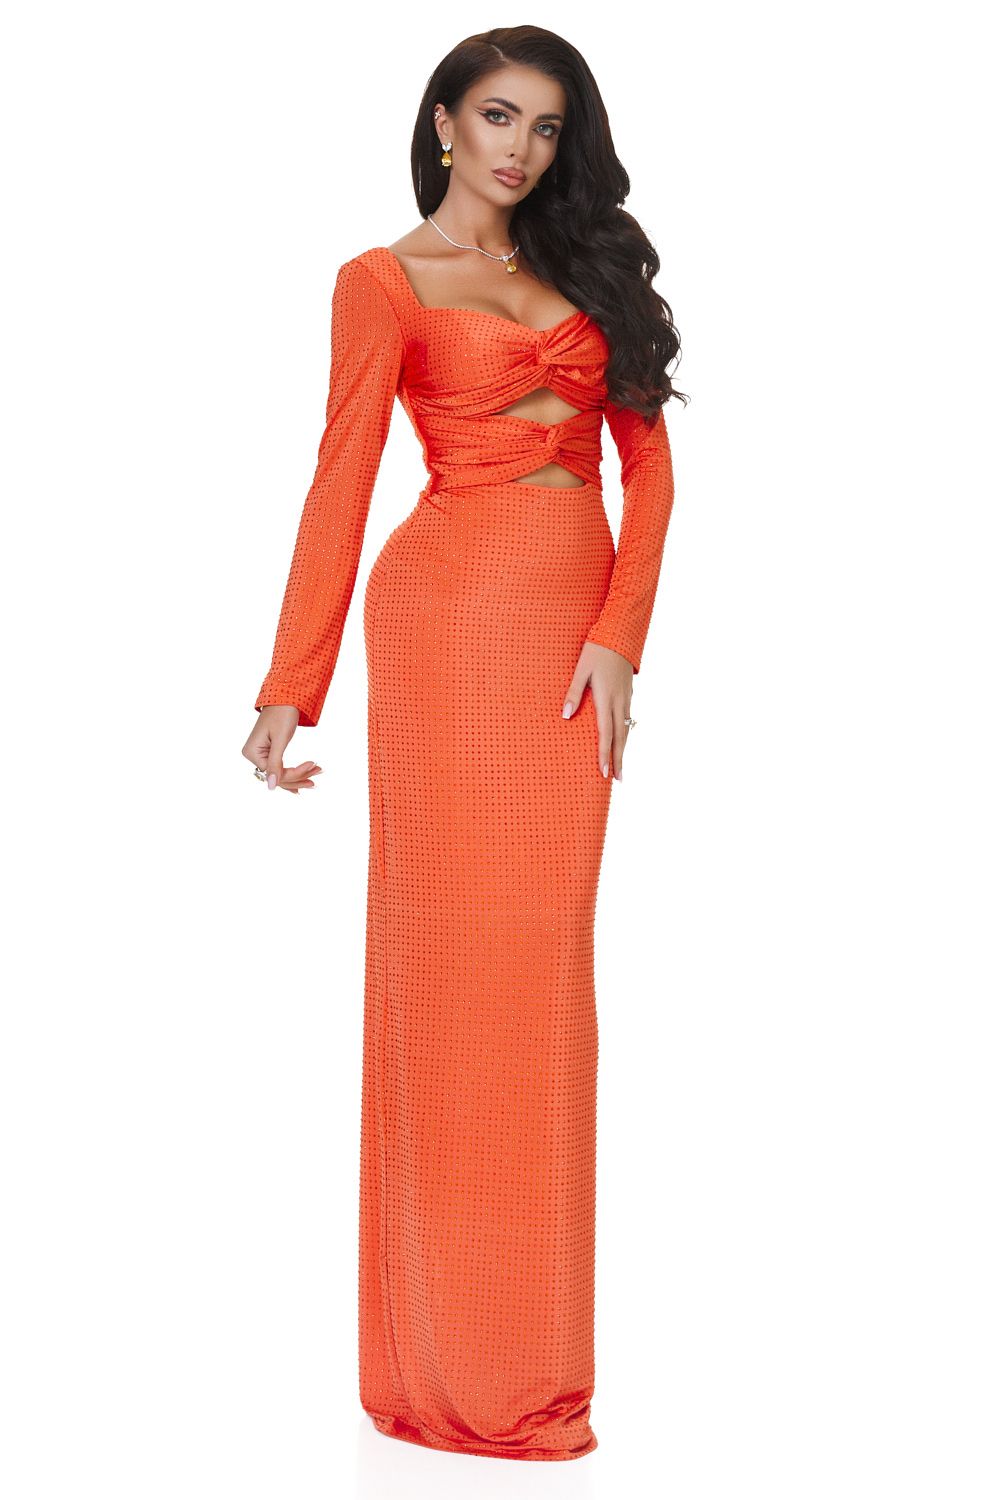 Дамска дълга оранжева рокля Ventuza Bogas